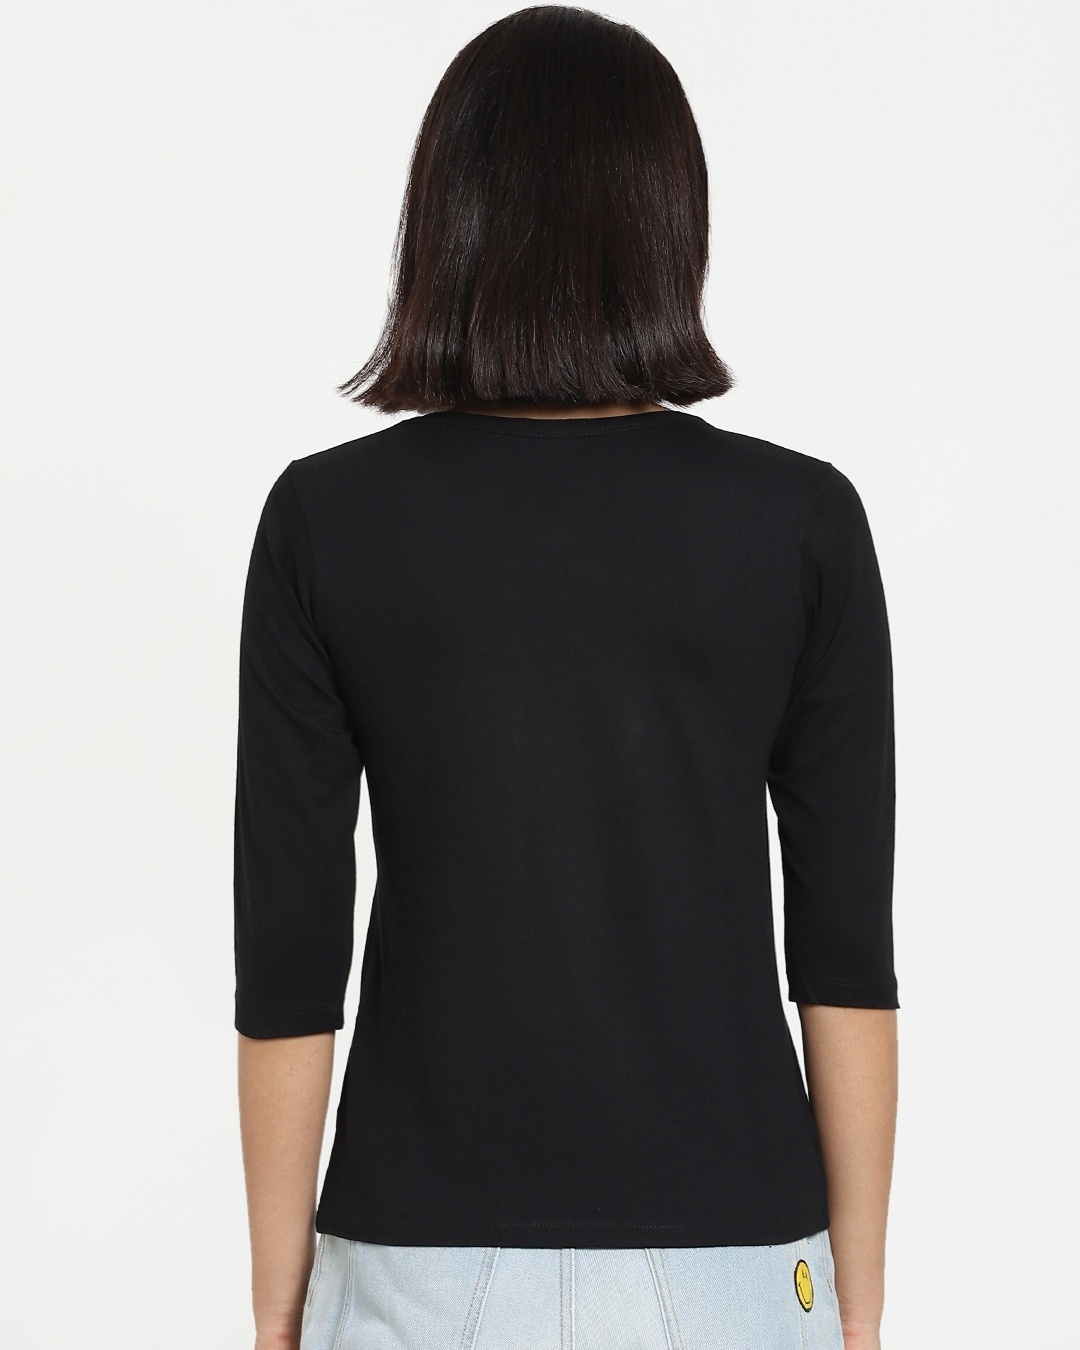 Shop Women's Black Believe Slim Fit T-shirt-Design